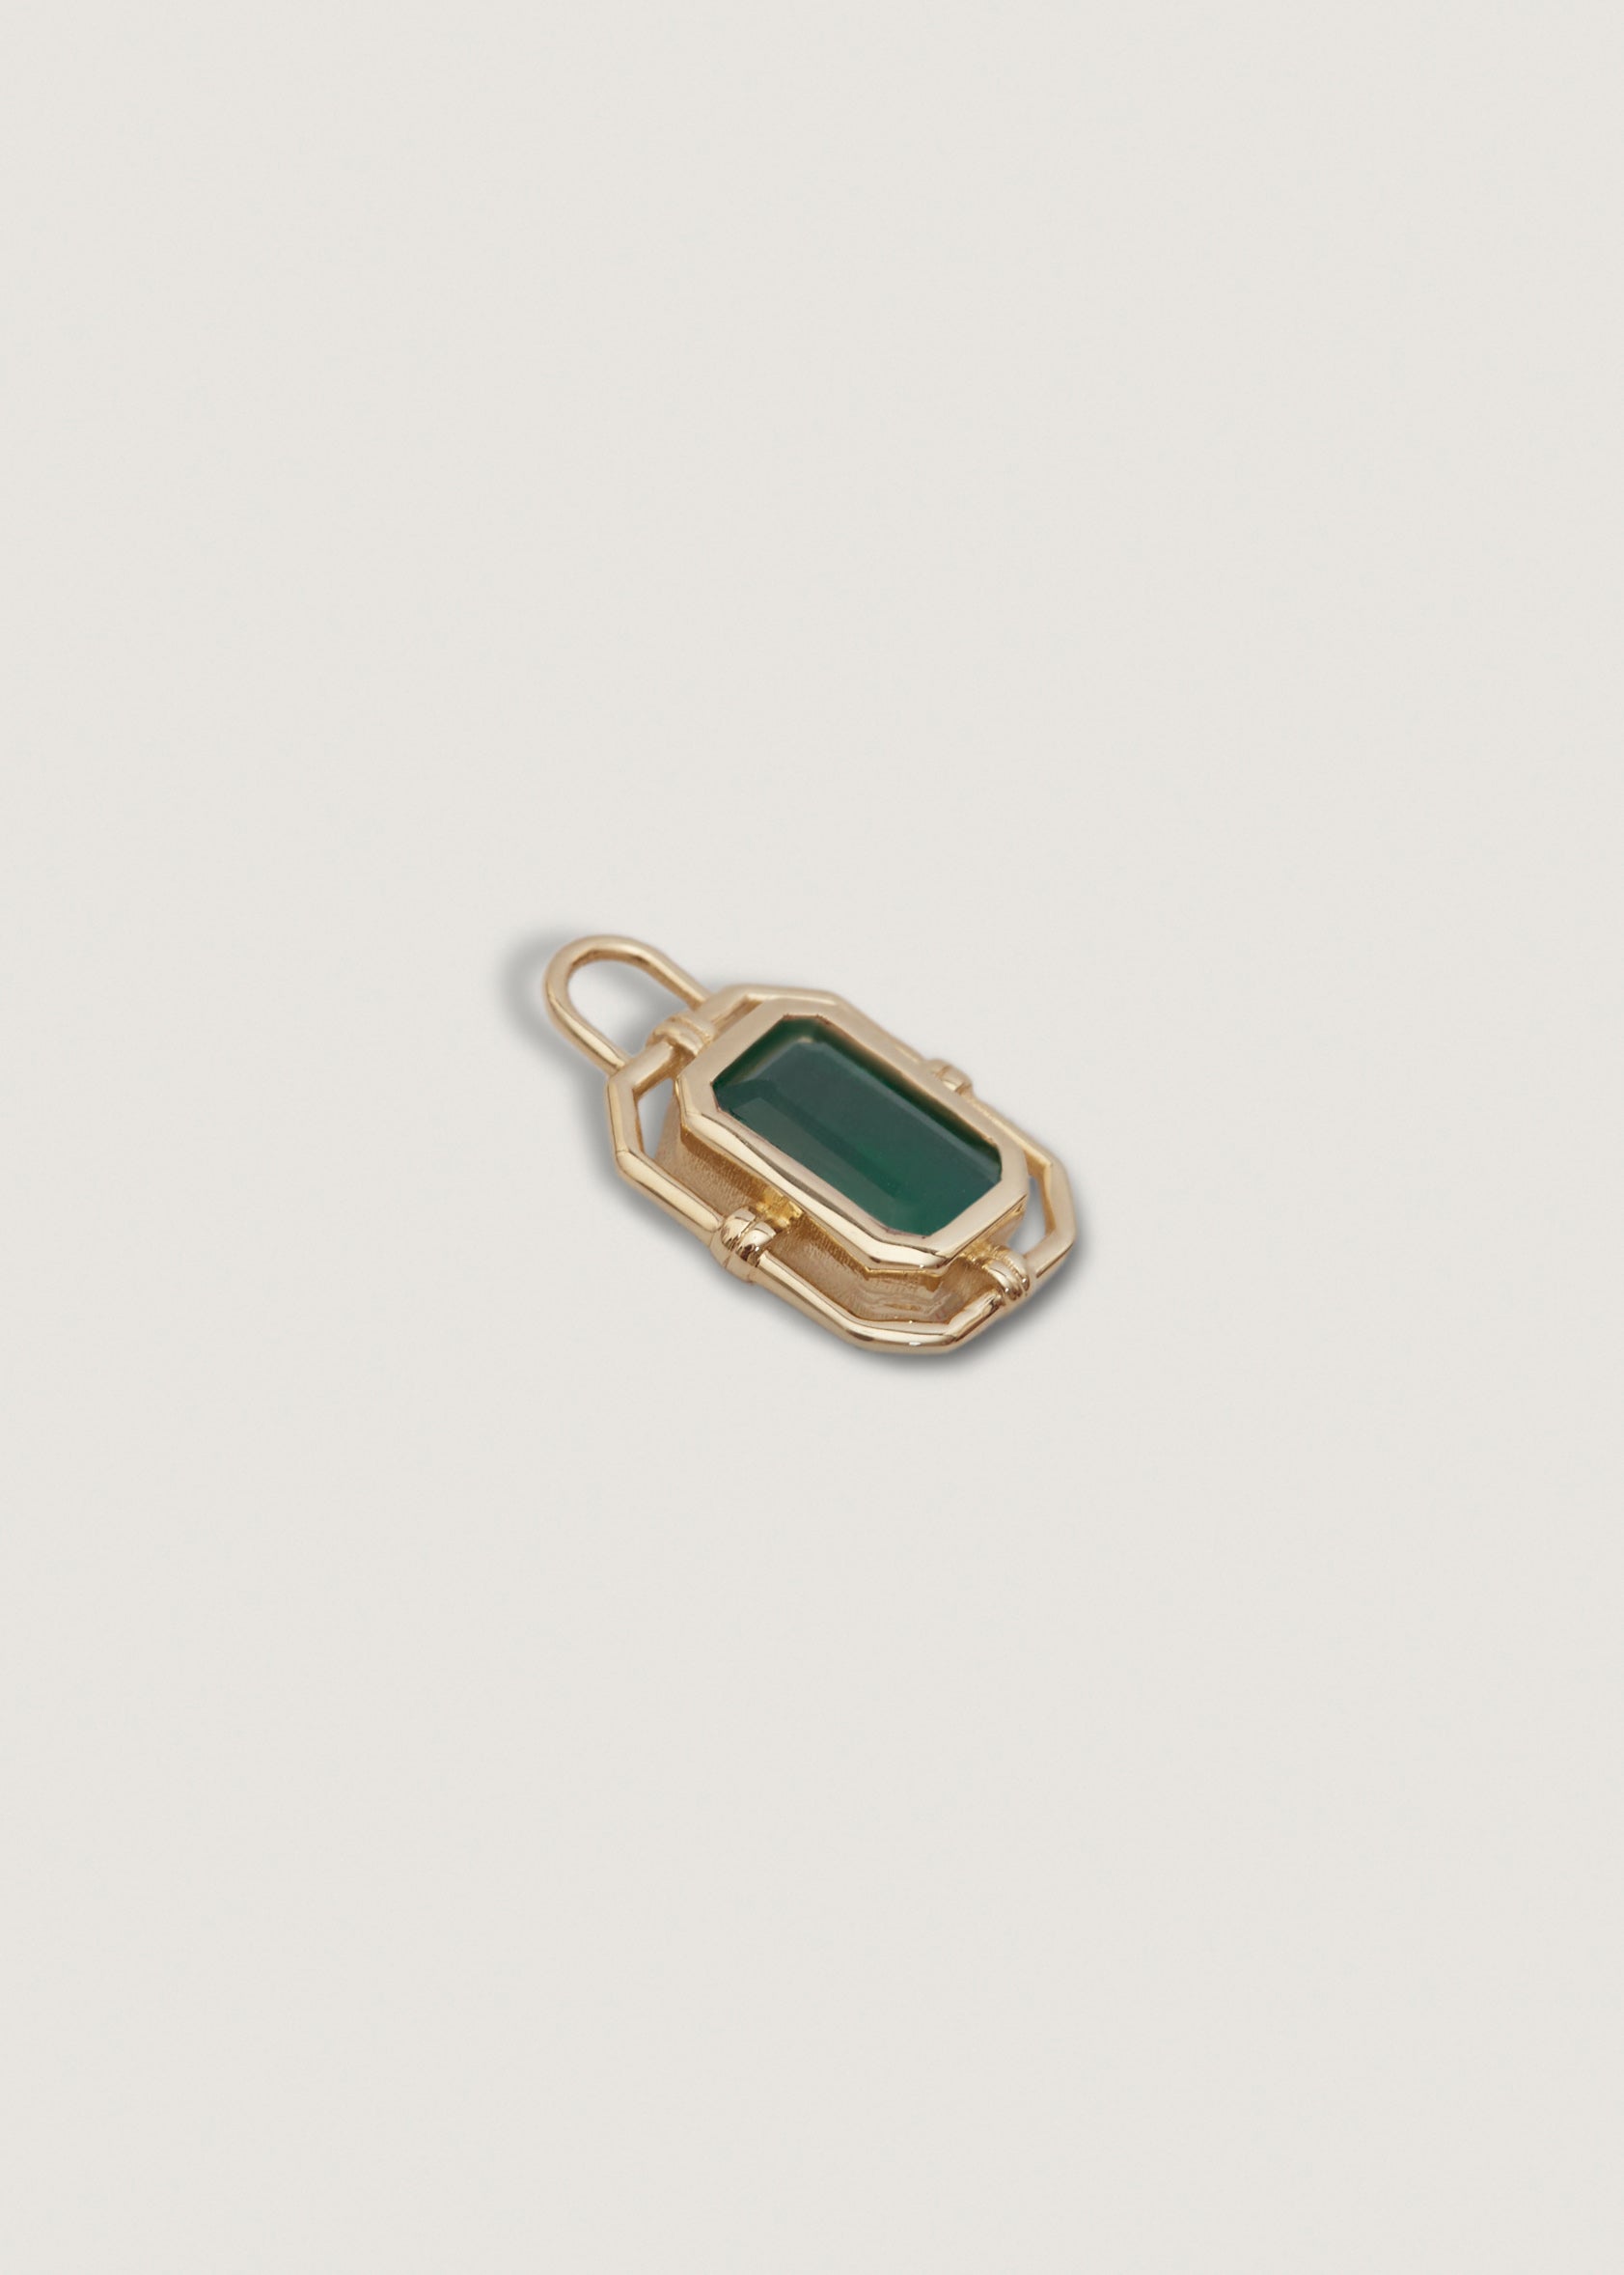 alt="Lyra Baguette Pendant I - Emerald"